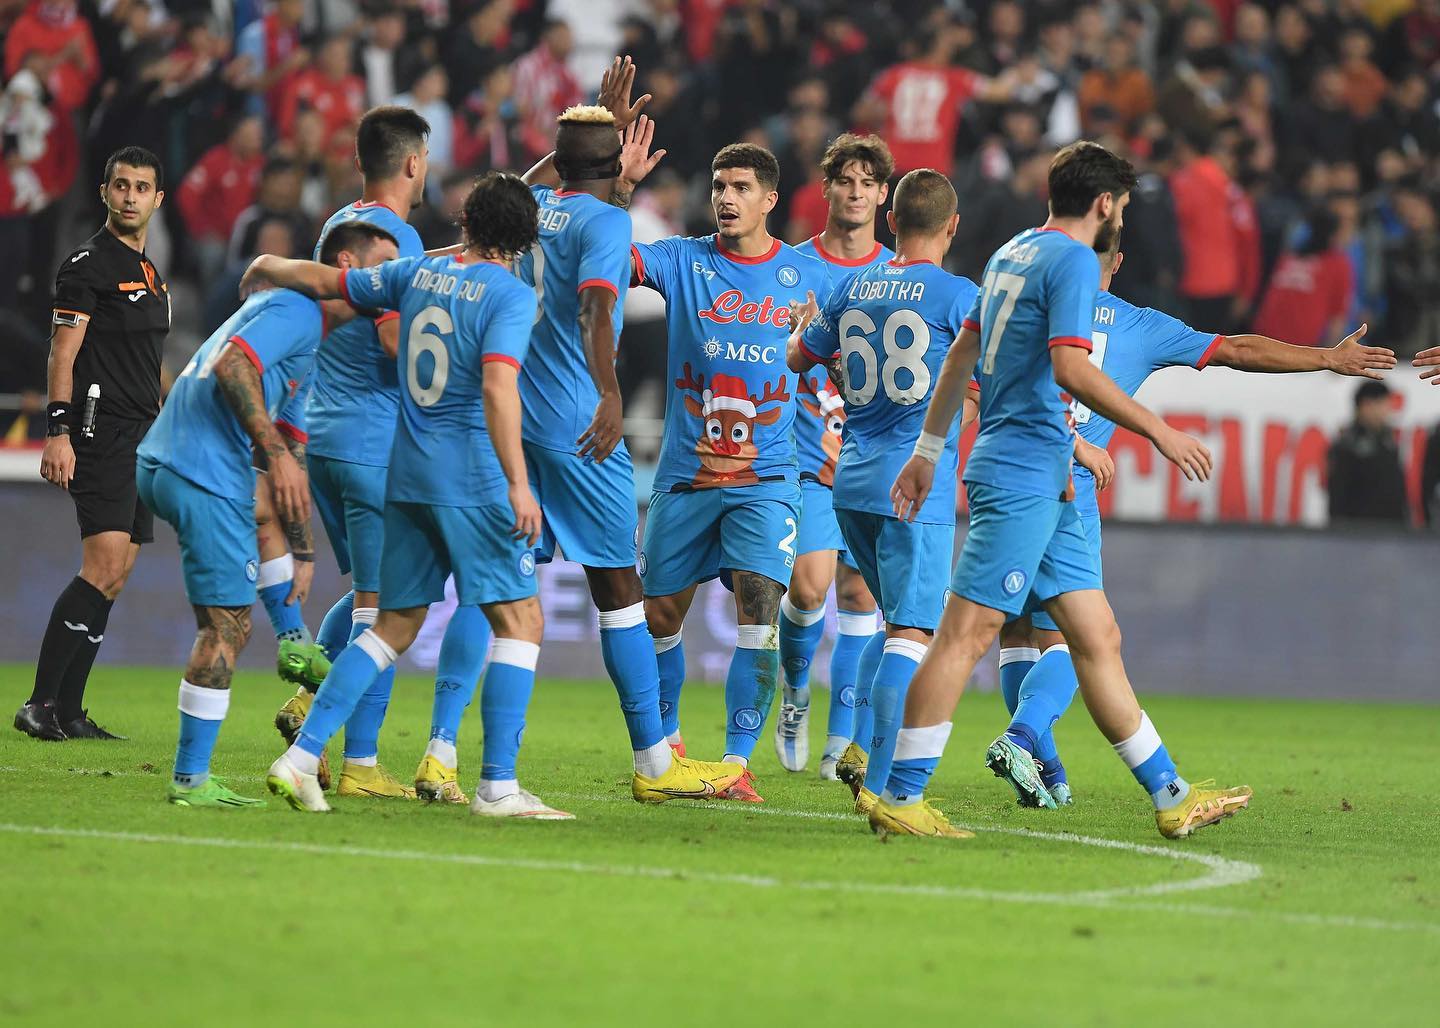 Calciatori SSC Napoli esultano dopo una vittoria